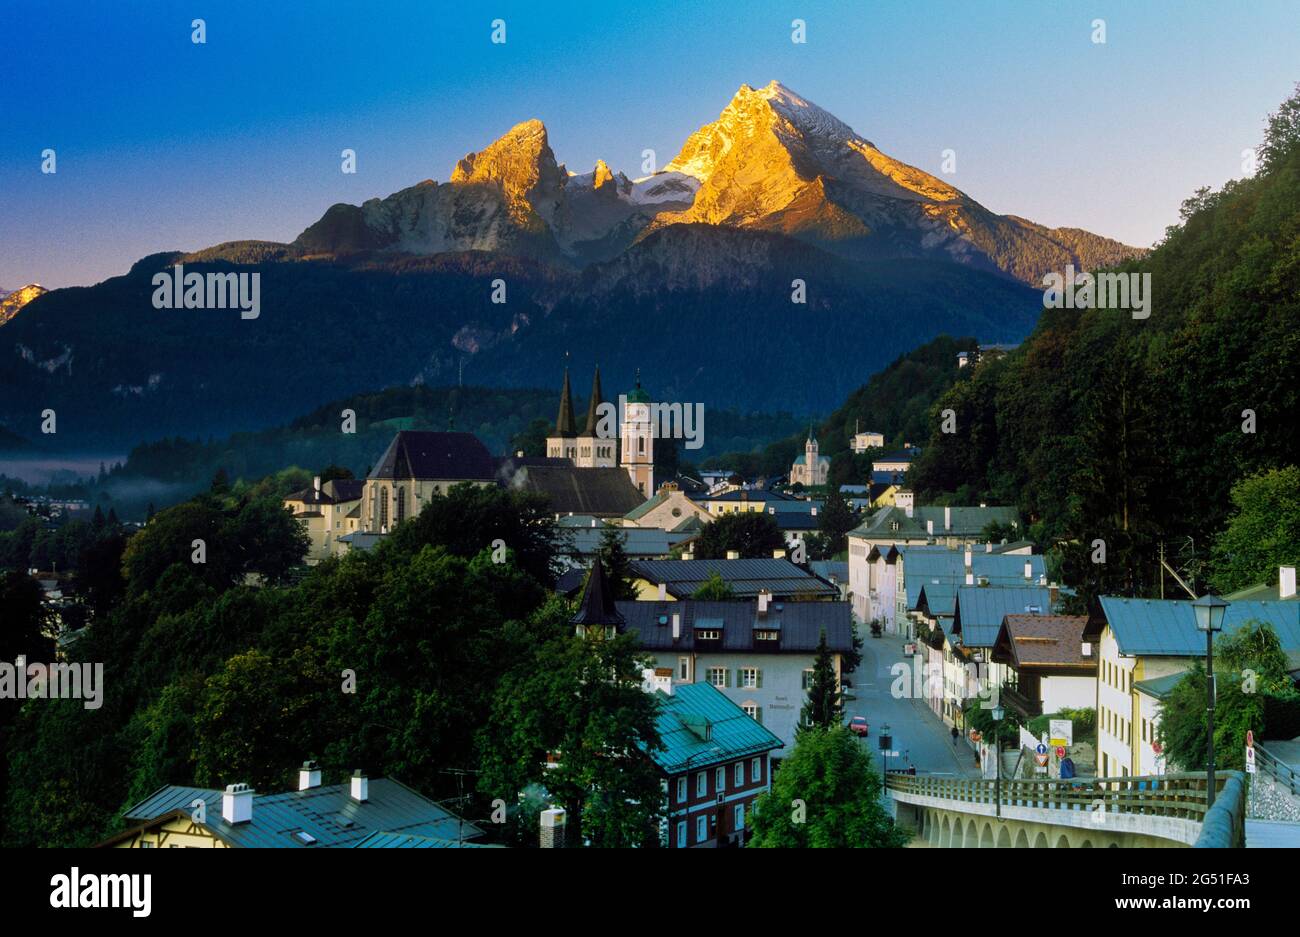 Town of Berchtesgaden and the Watzmann mountain, Bavaria, Germany Stock Photo